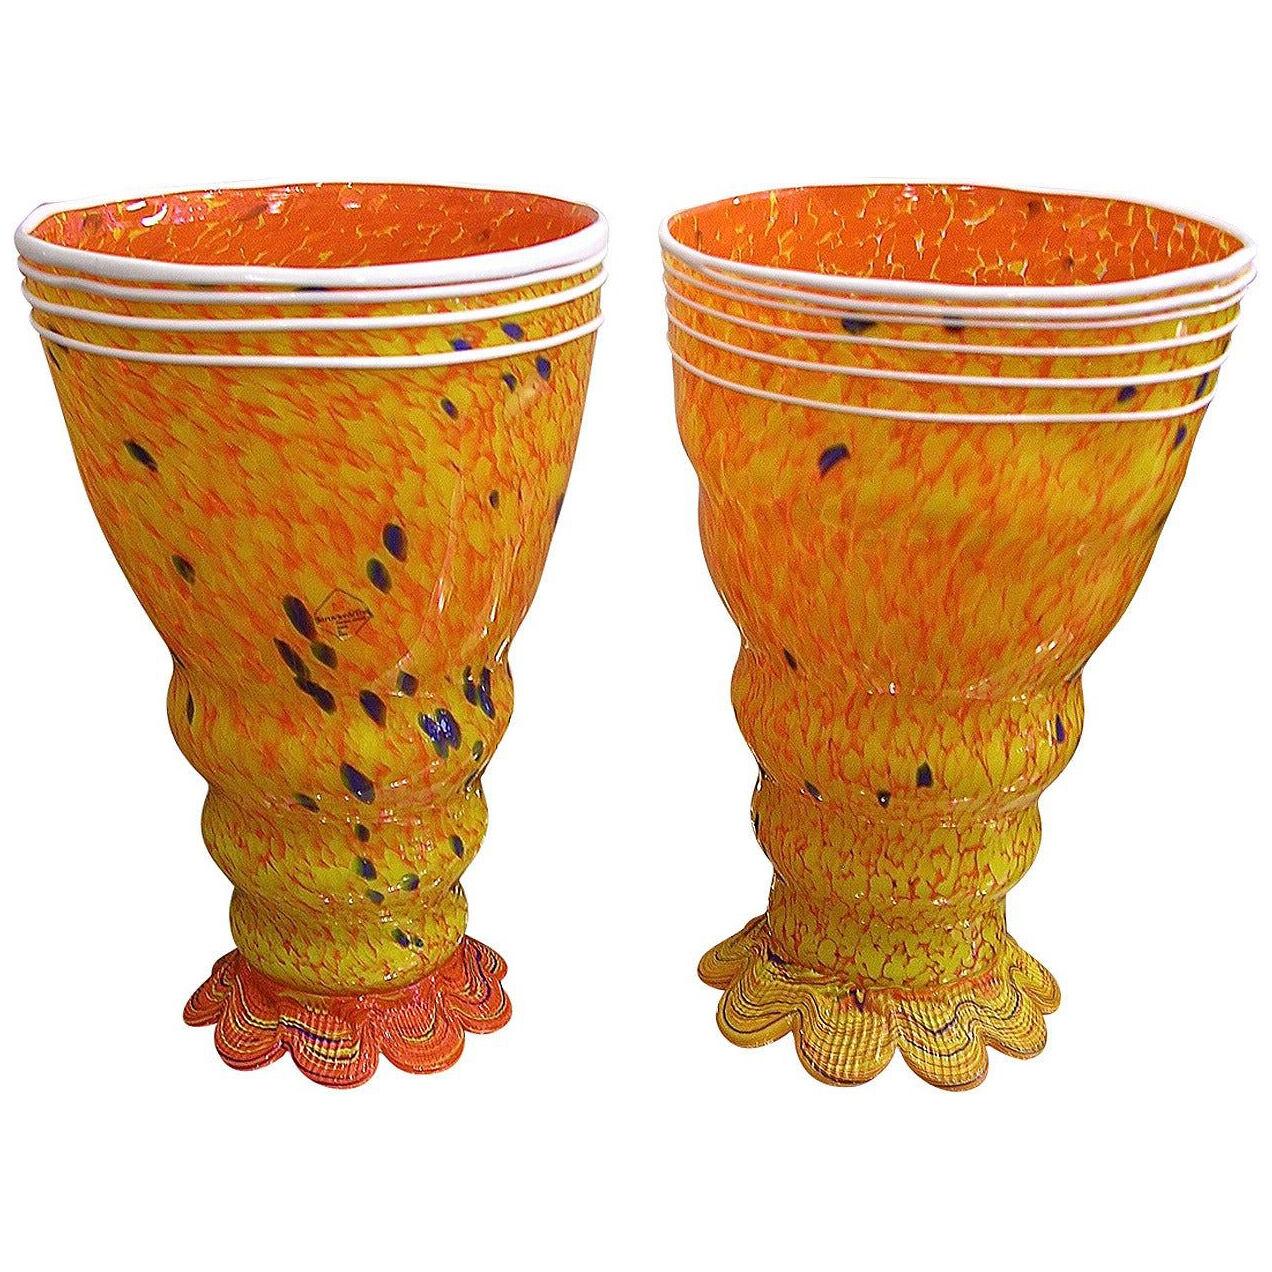 Barovier Toso 1990s Modern Yellow-Orange Murano Glass Luminous Lamps	